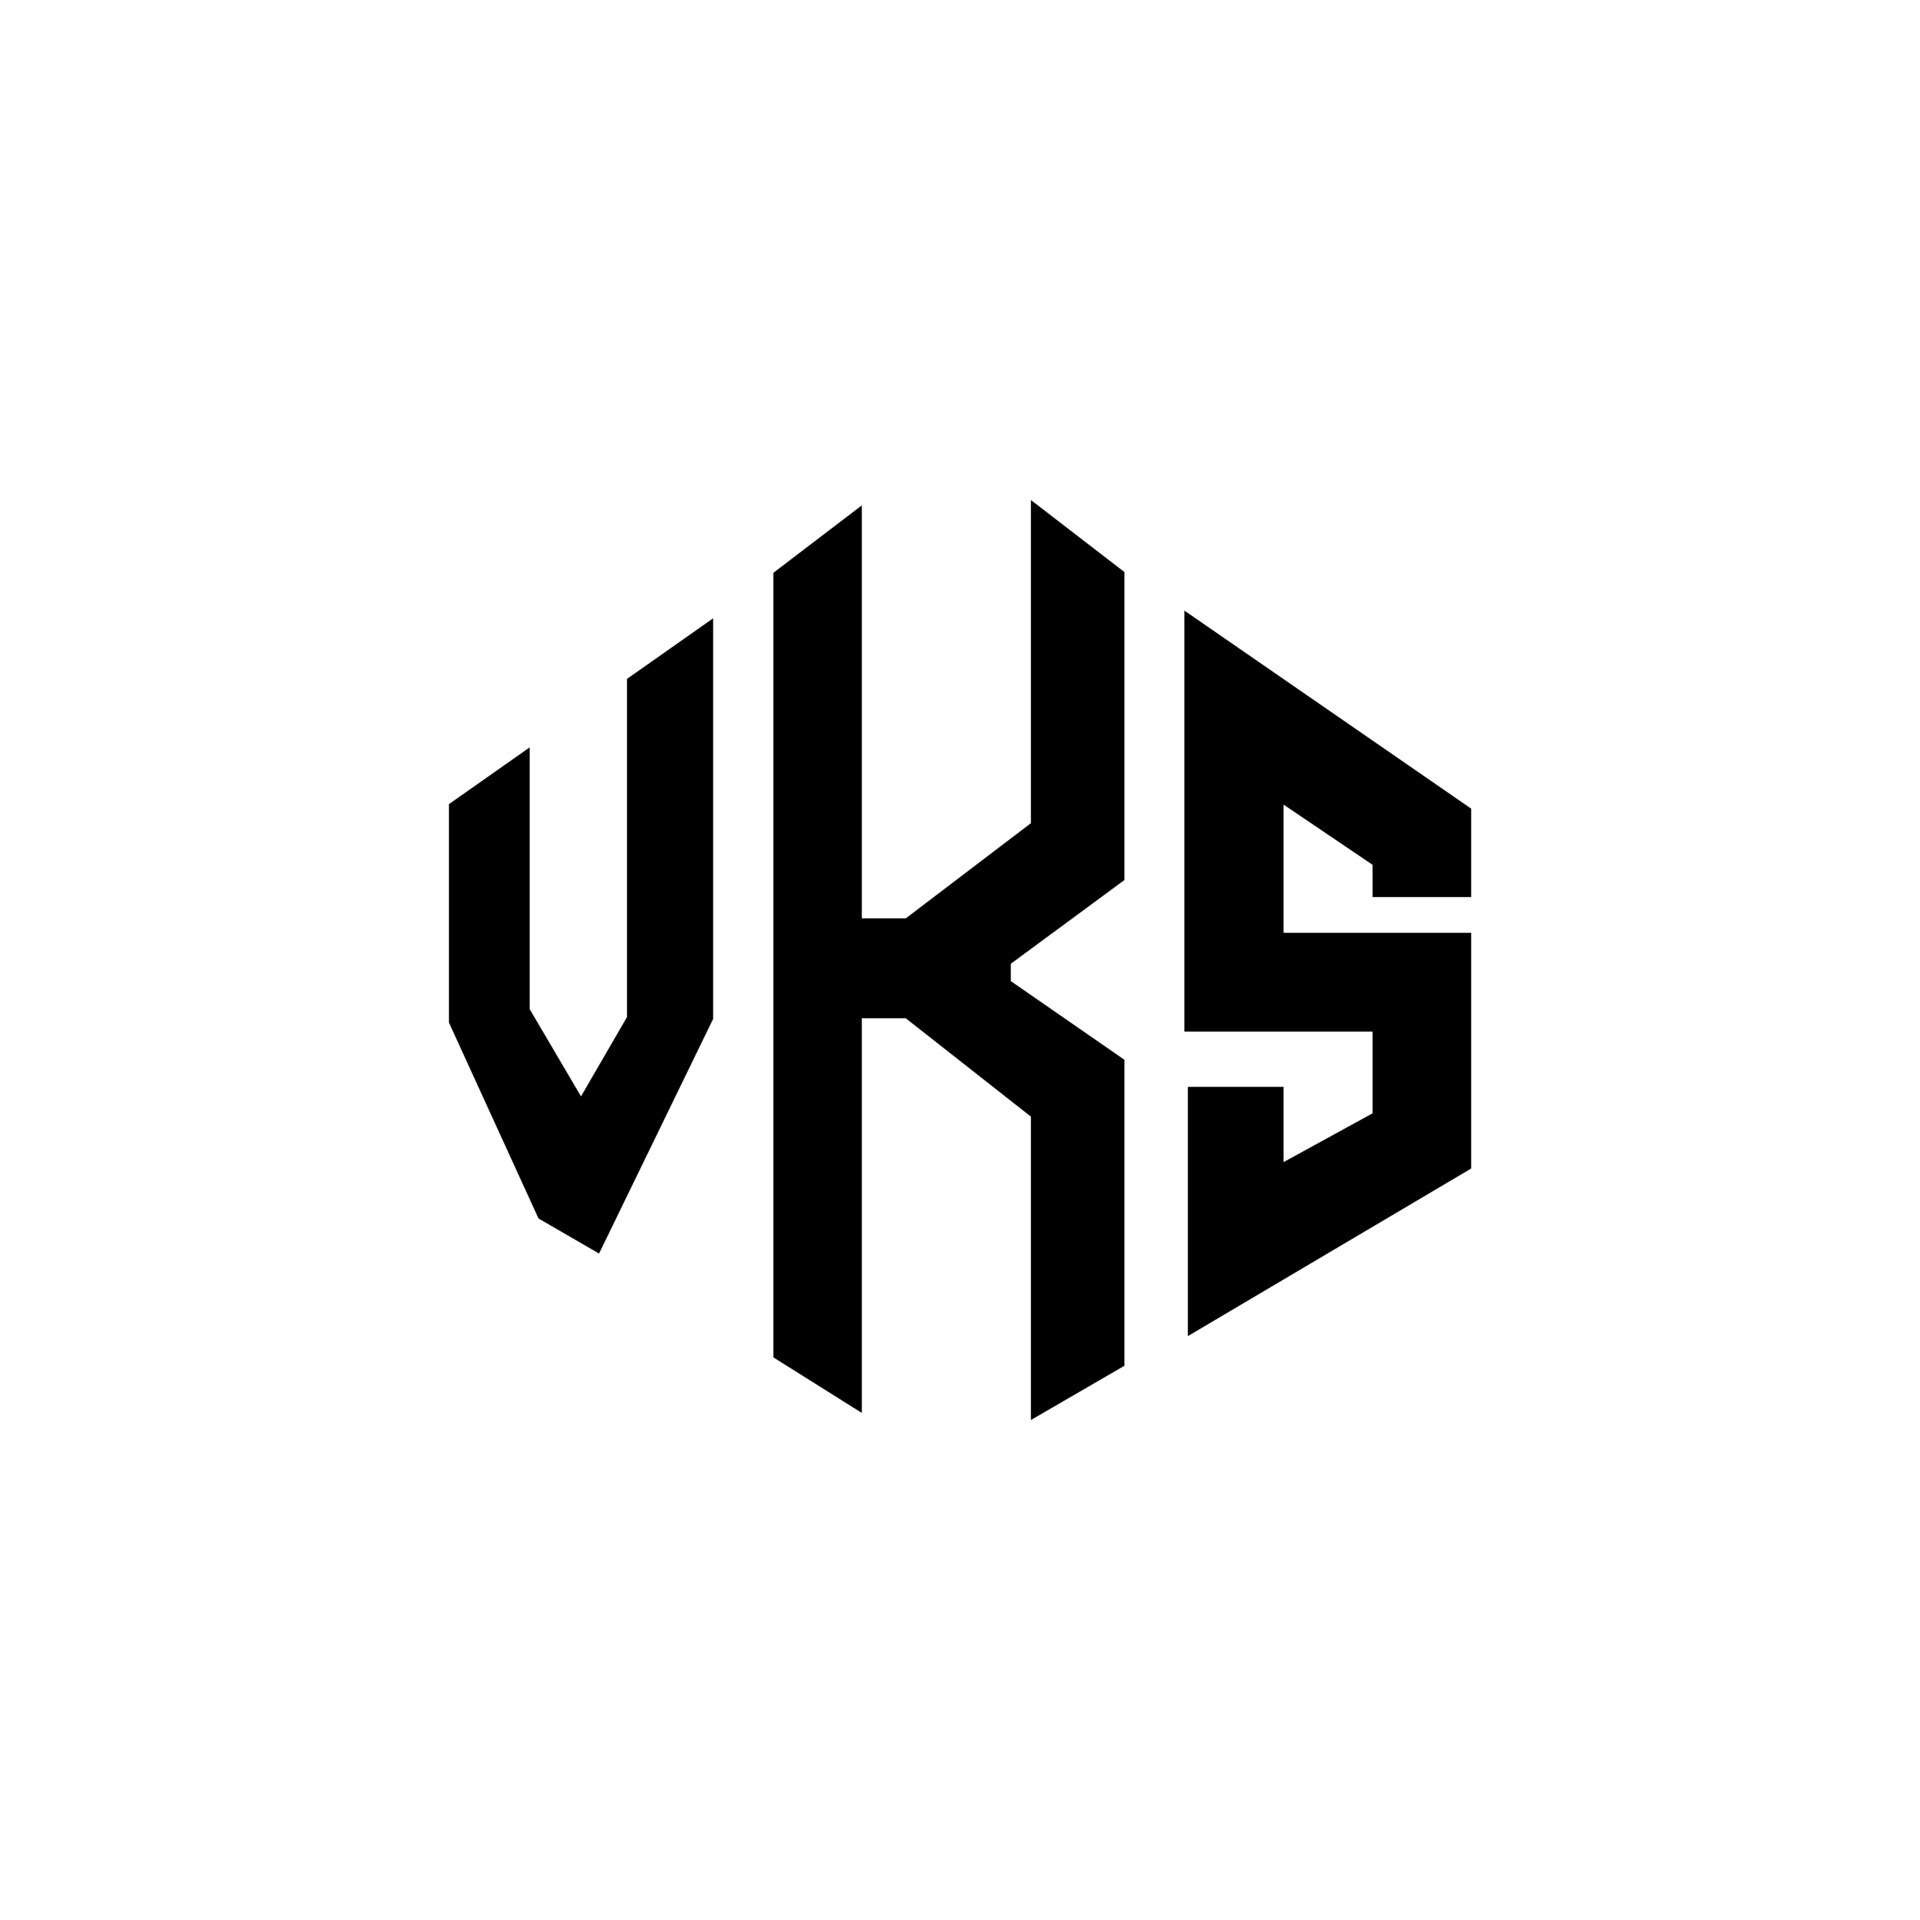 Vks Buchstaben Logo Design Mit Polygonform Vks Logo Design In Polygon